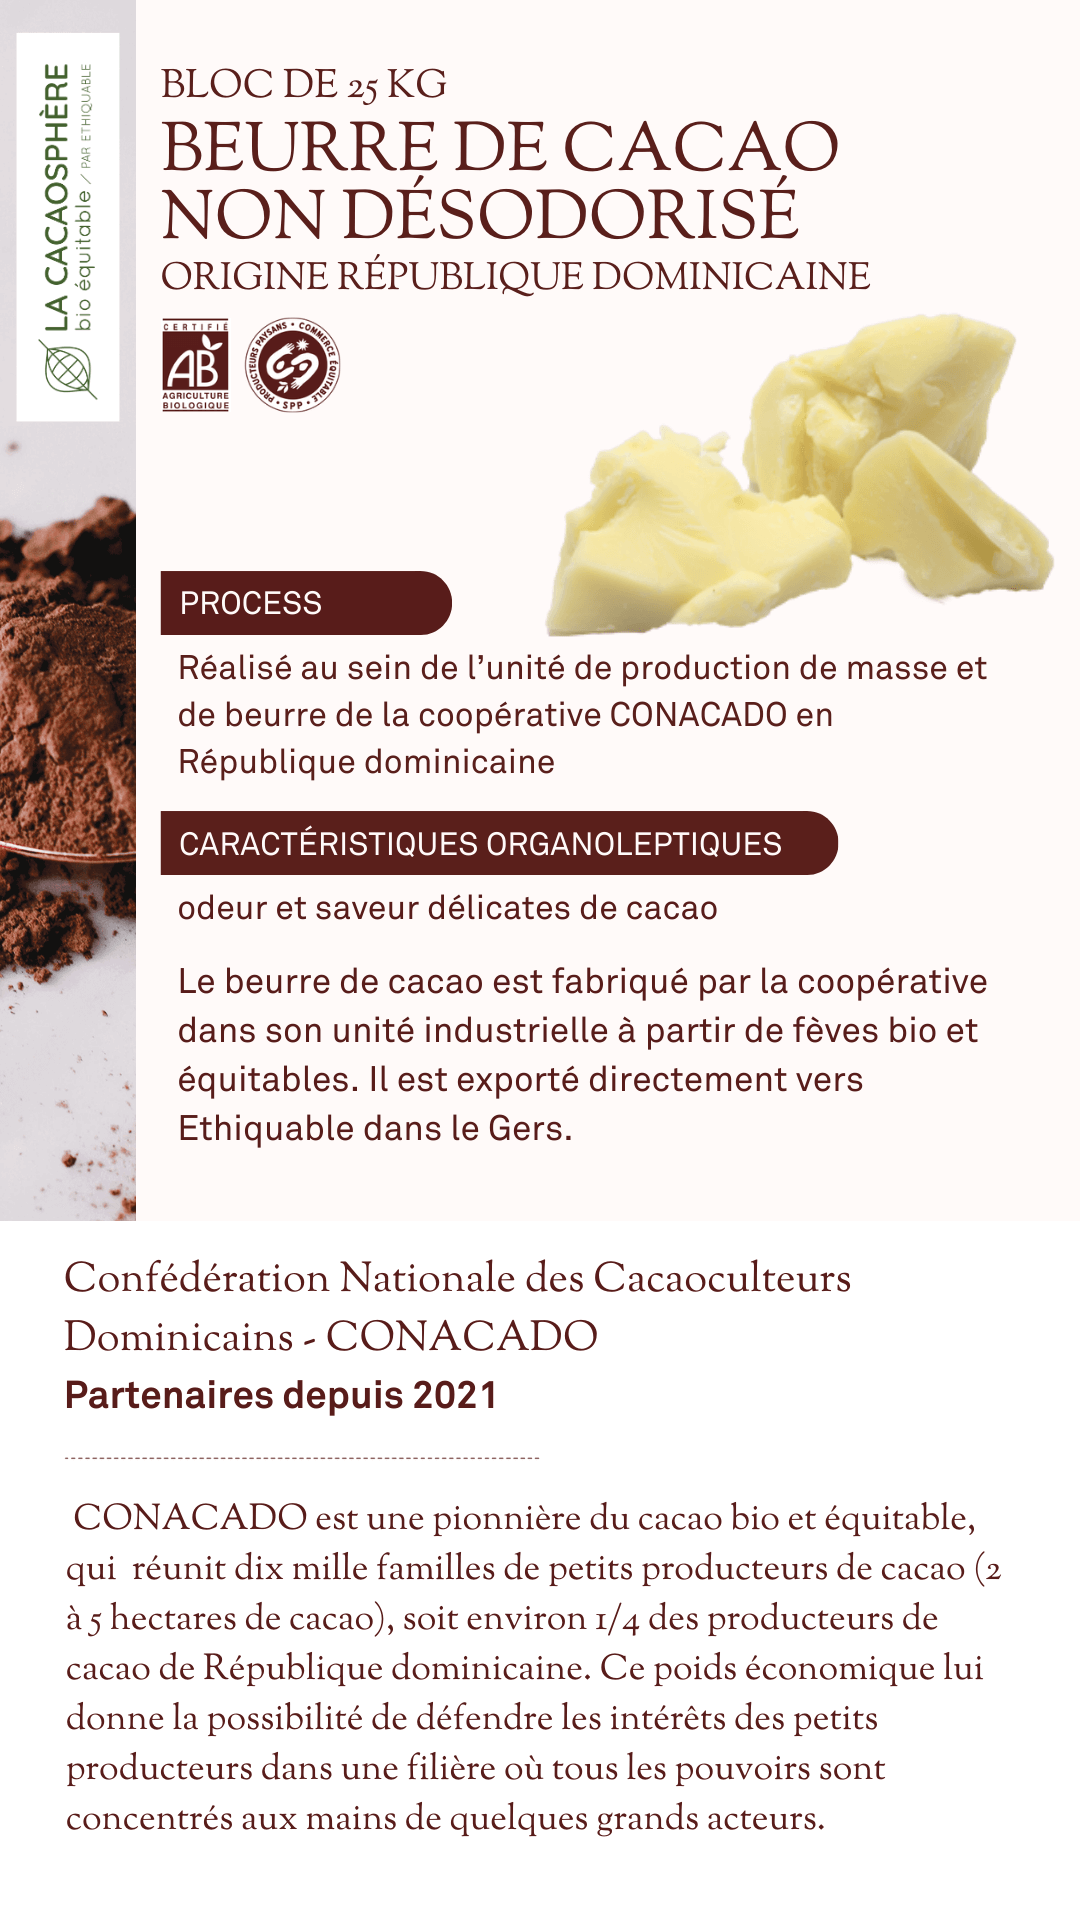 BEURRE de cacao NON DÉSODORISÉ La cacaosphère bio équitable